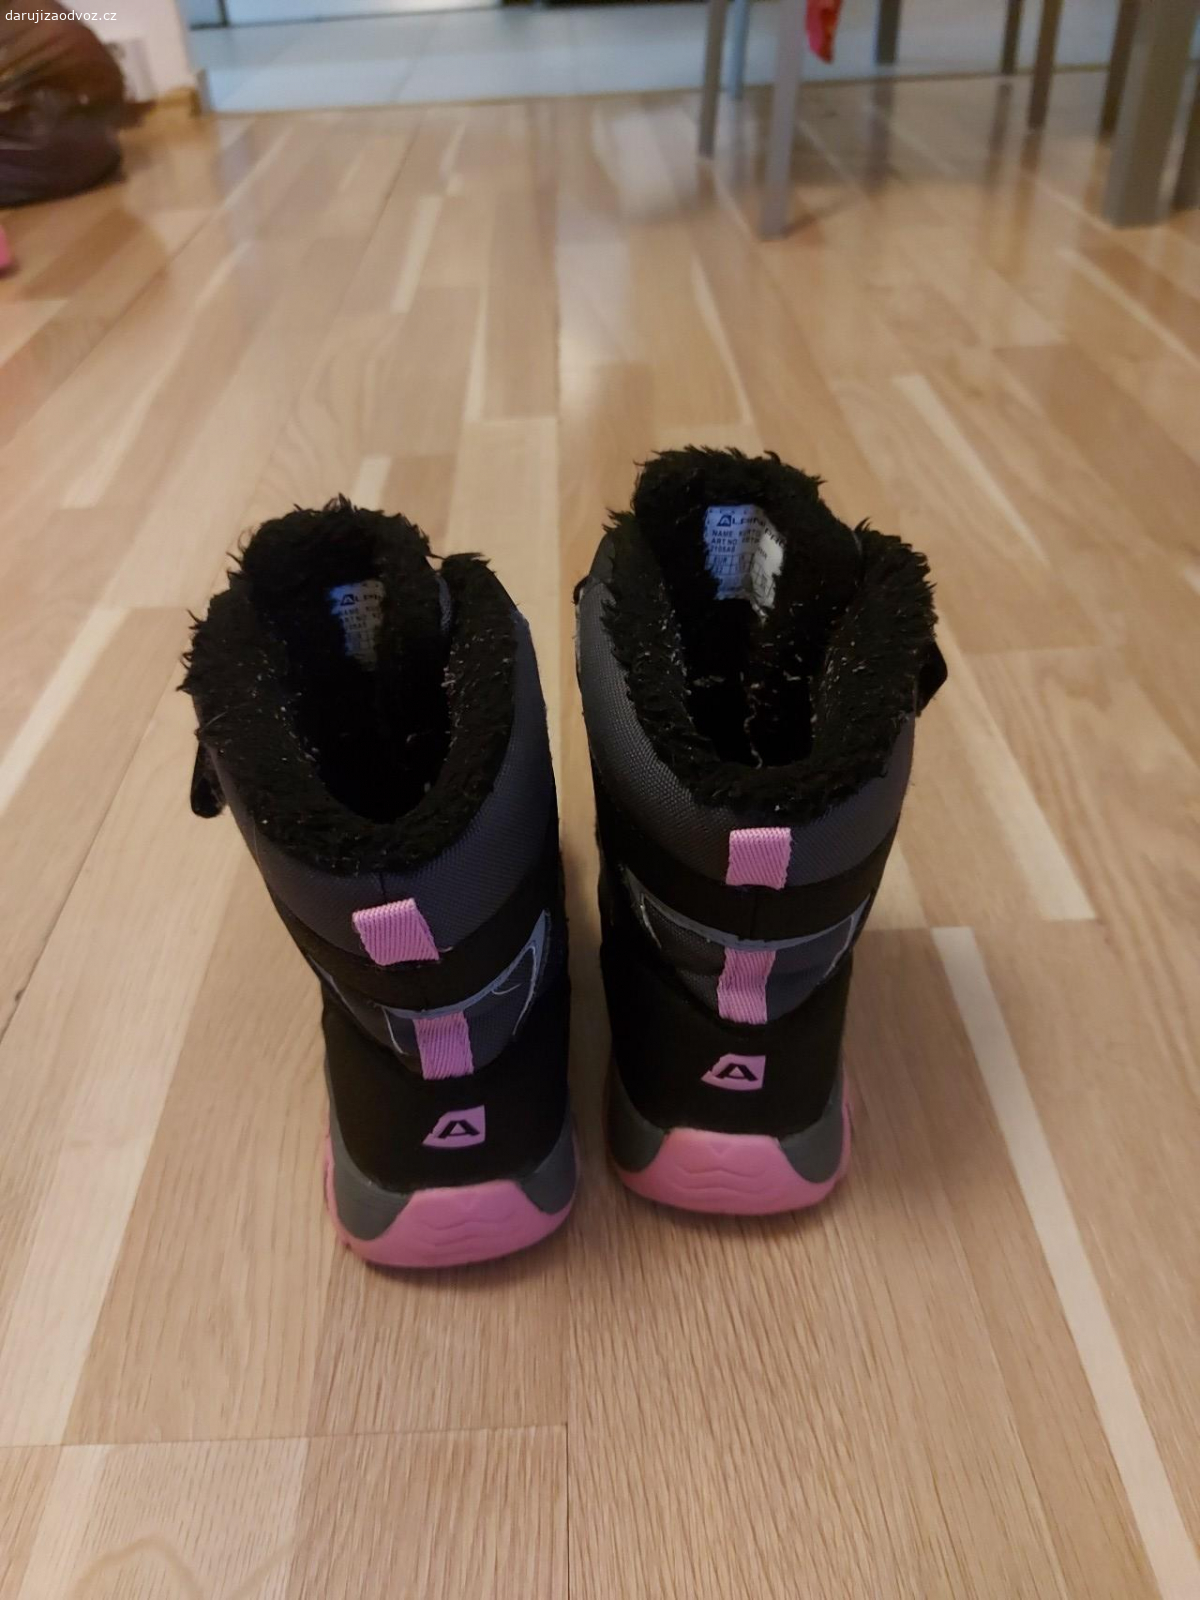 Dětské zimní boty pro holku. daruji zimní boty pro holku . velikost 32 . Nikam neposílám ani nevozím(na odpovědi tohoto typu nebudu ani odpovídat a budu rovnou blokovat odesilatele)